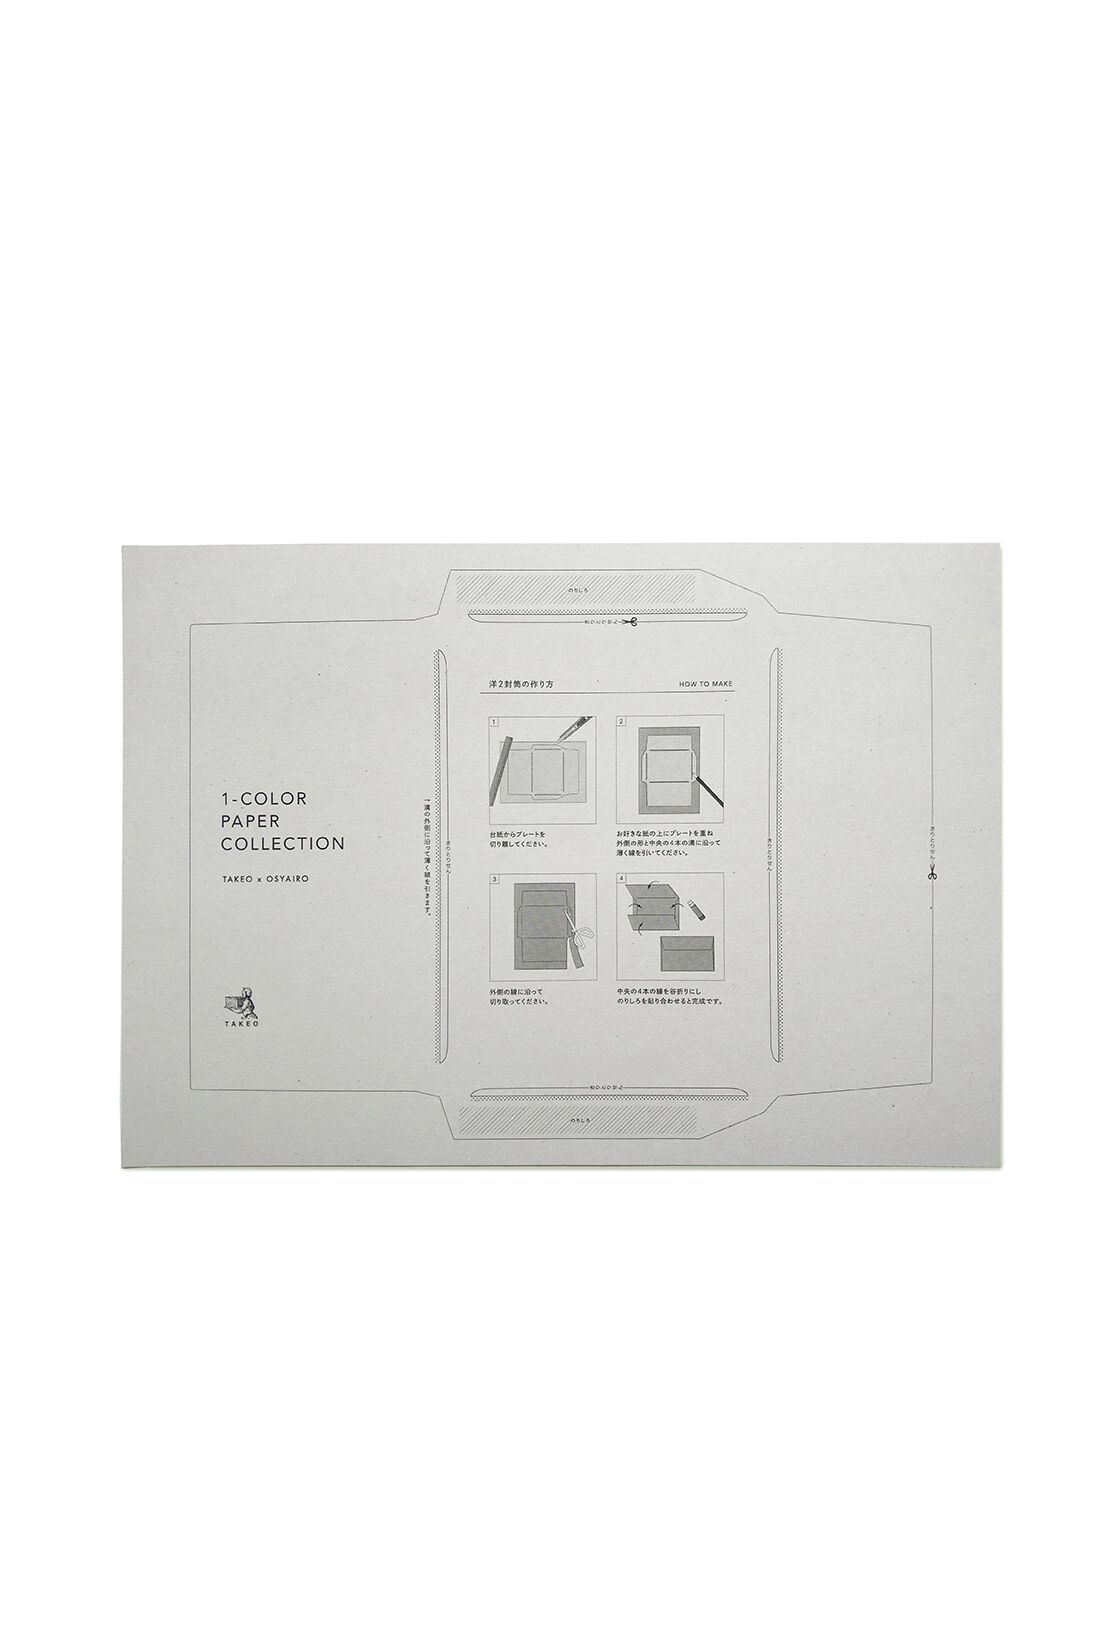 OSYAIRO|OSYAIRO 紙の専門商社竹尾が選ぶ　色を楽しむ紙セットの会〈緑〉|付属の型紙を使ってA4サイズの紙で封筒がきれいに作れます。